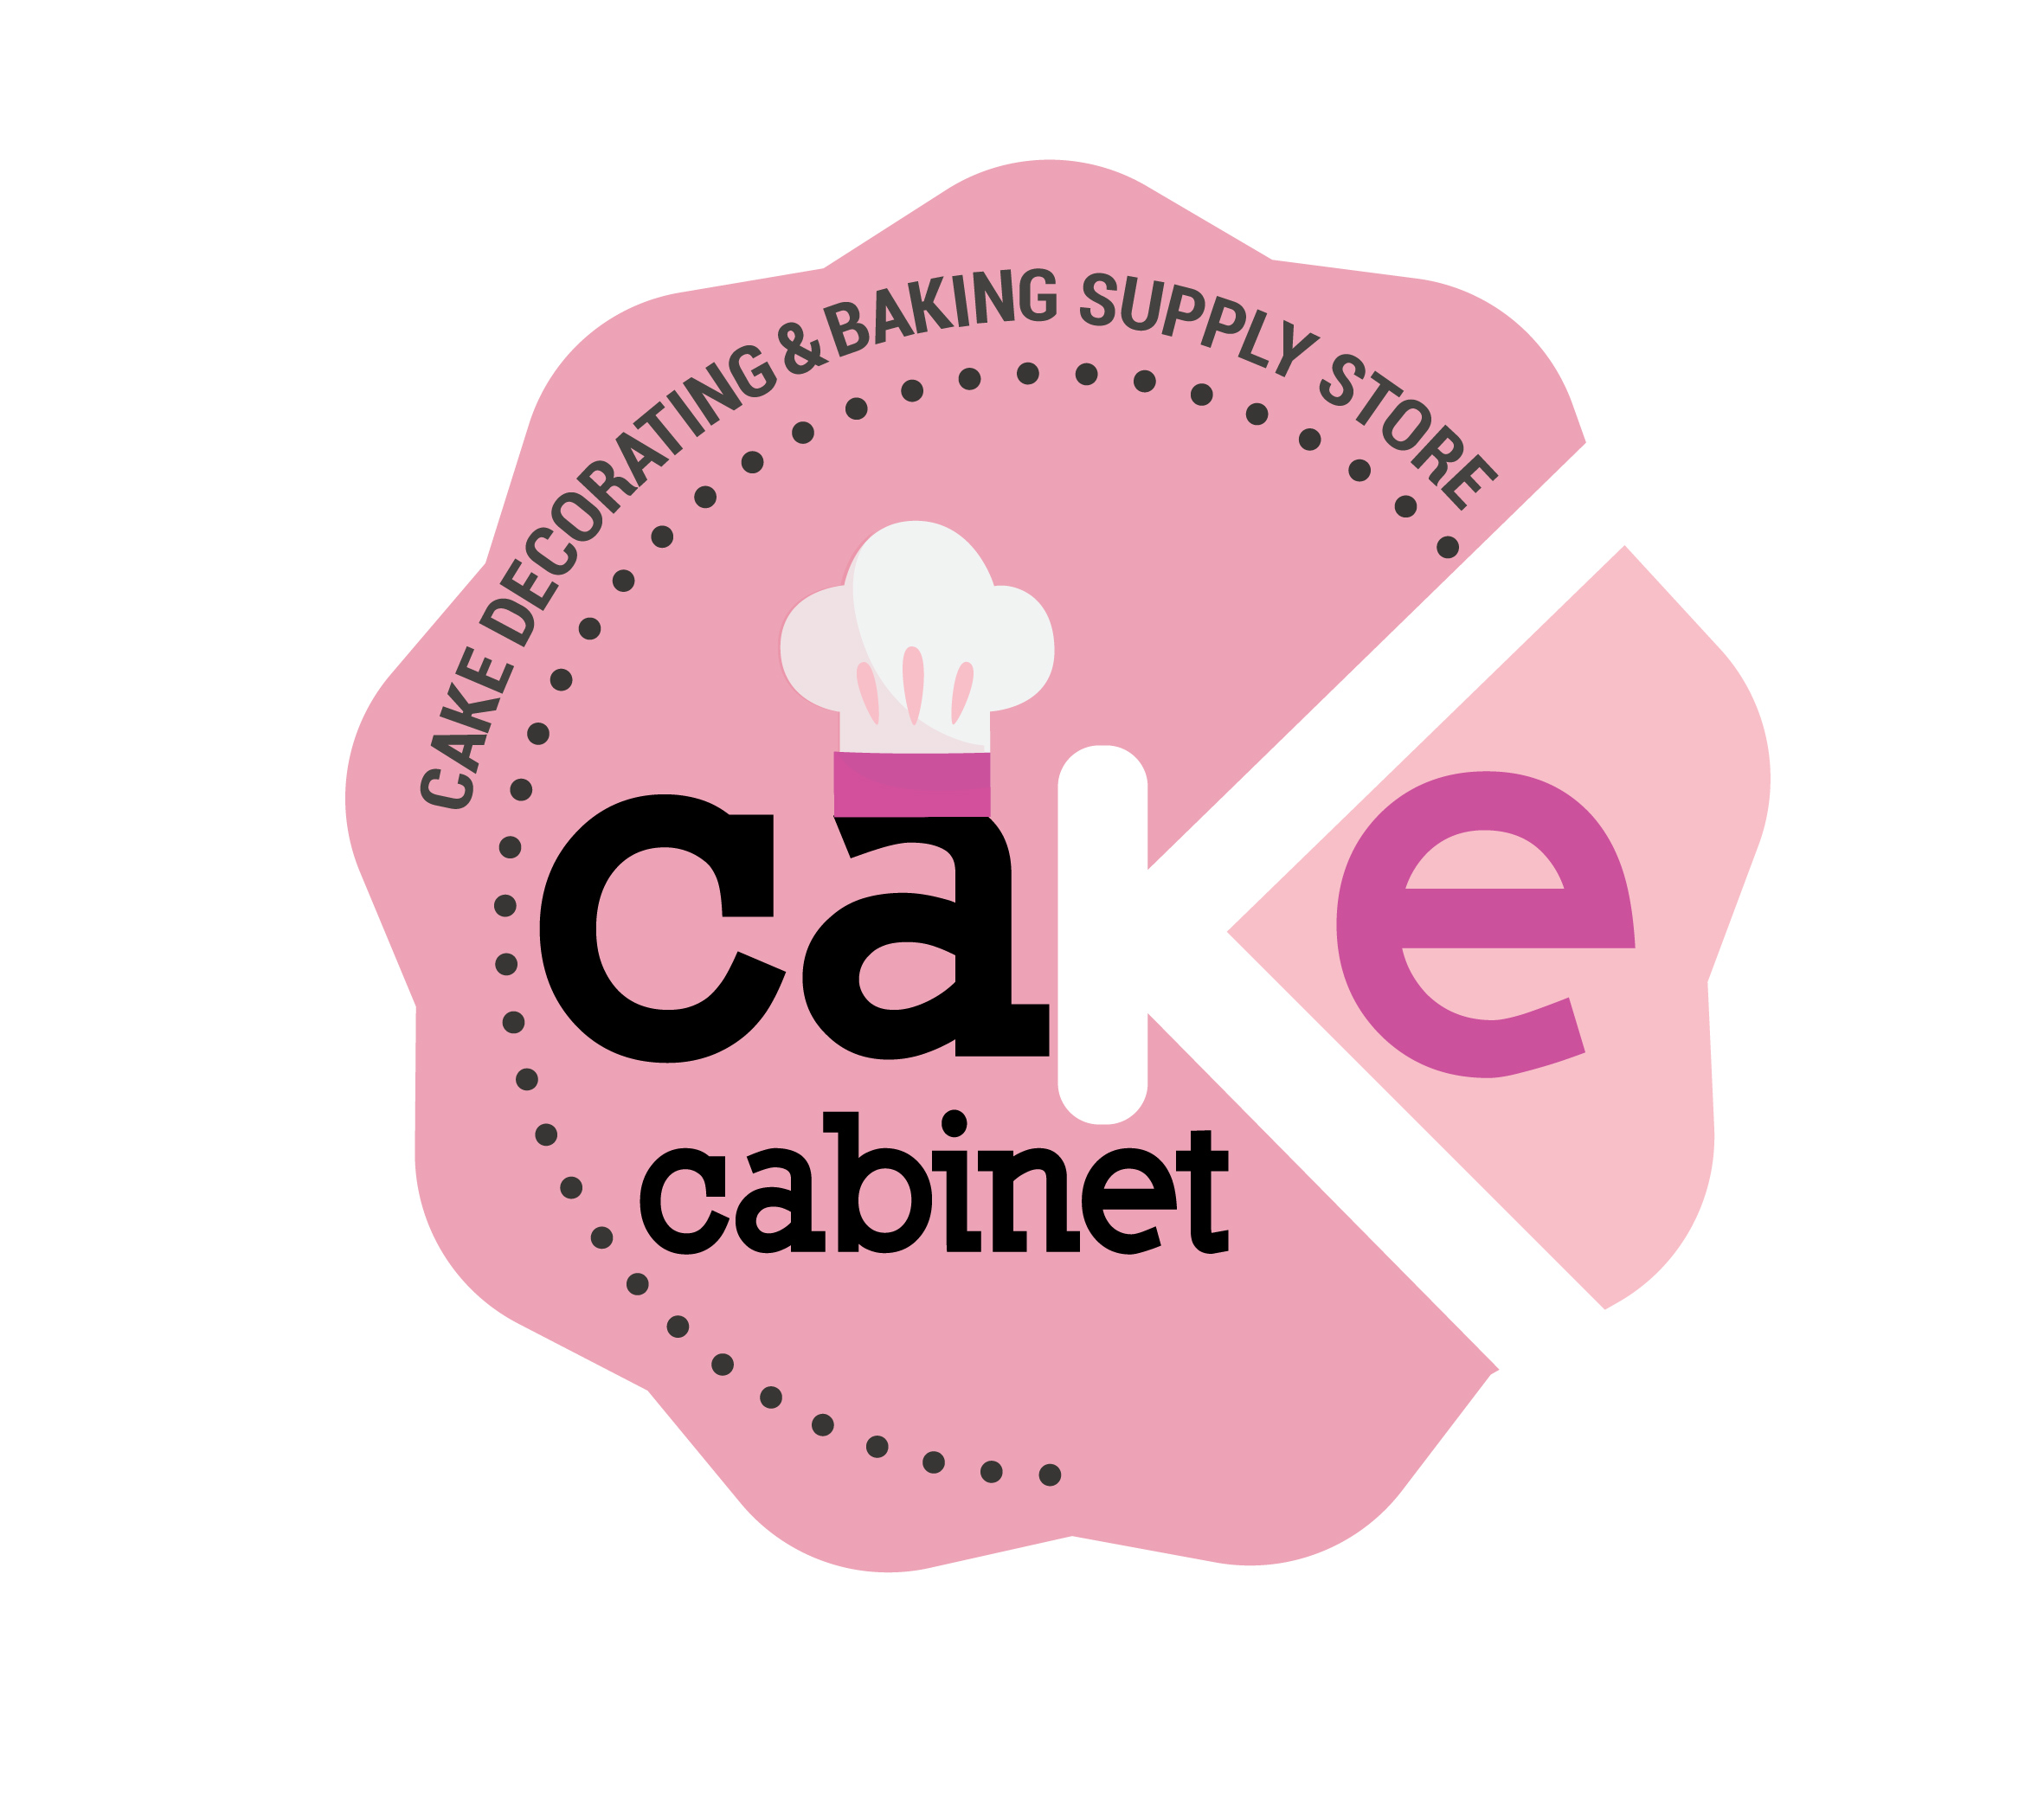 Cake Cabinet - Cake Decorating & Backing Supply Store